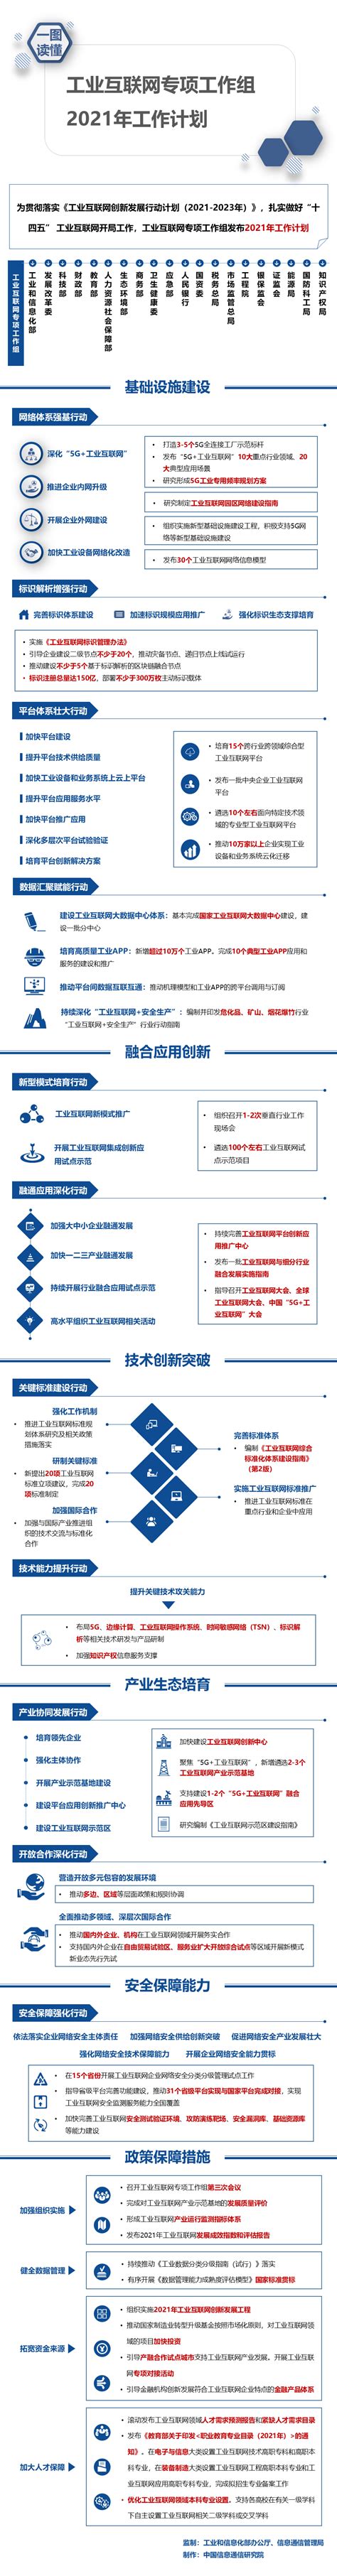 《2021河南省互联网发展报告》发布 河南5G终端用户居全国第三位-大河网